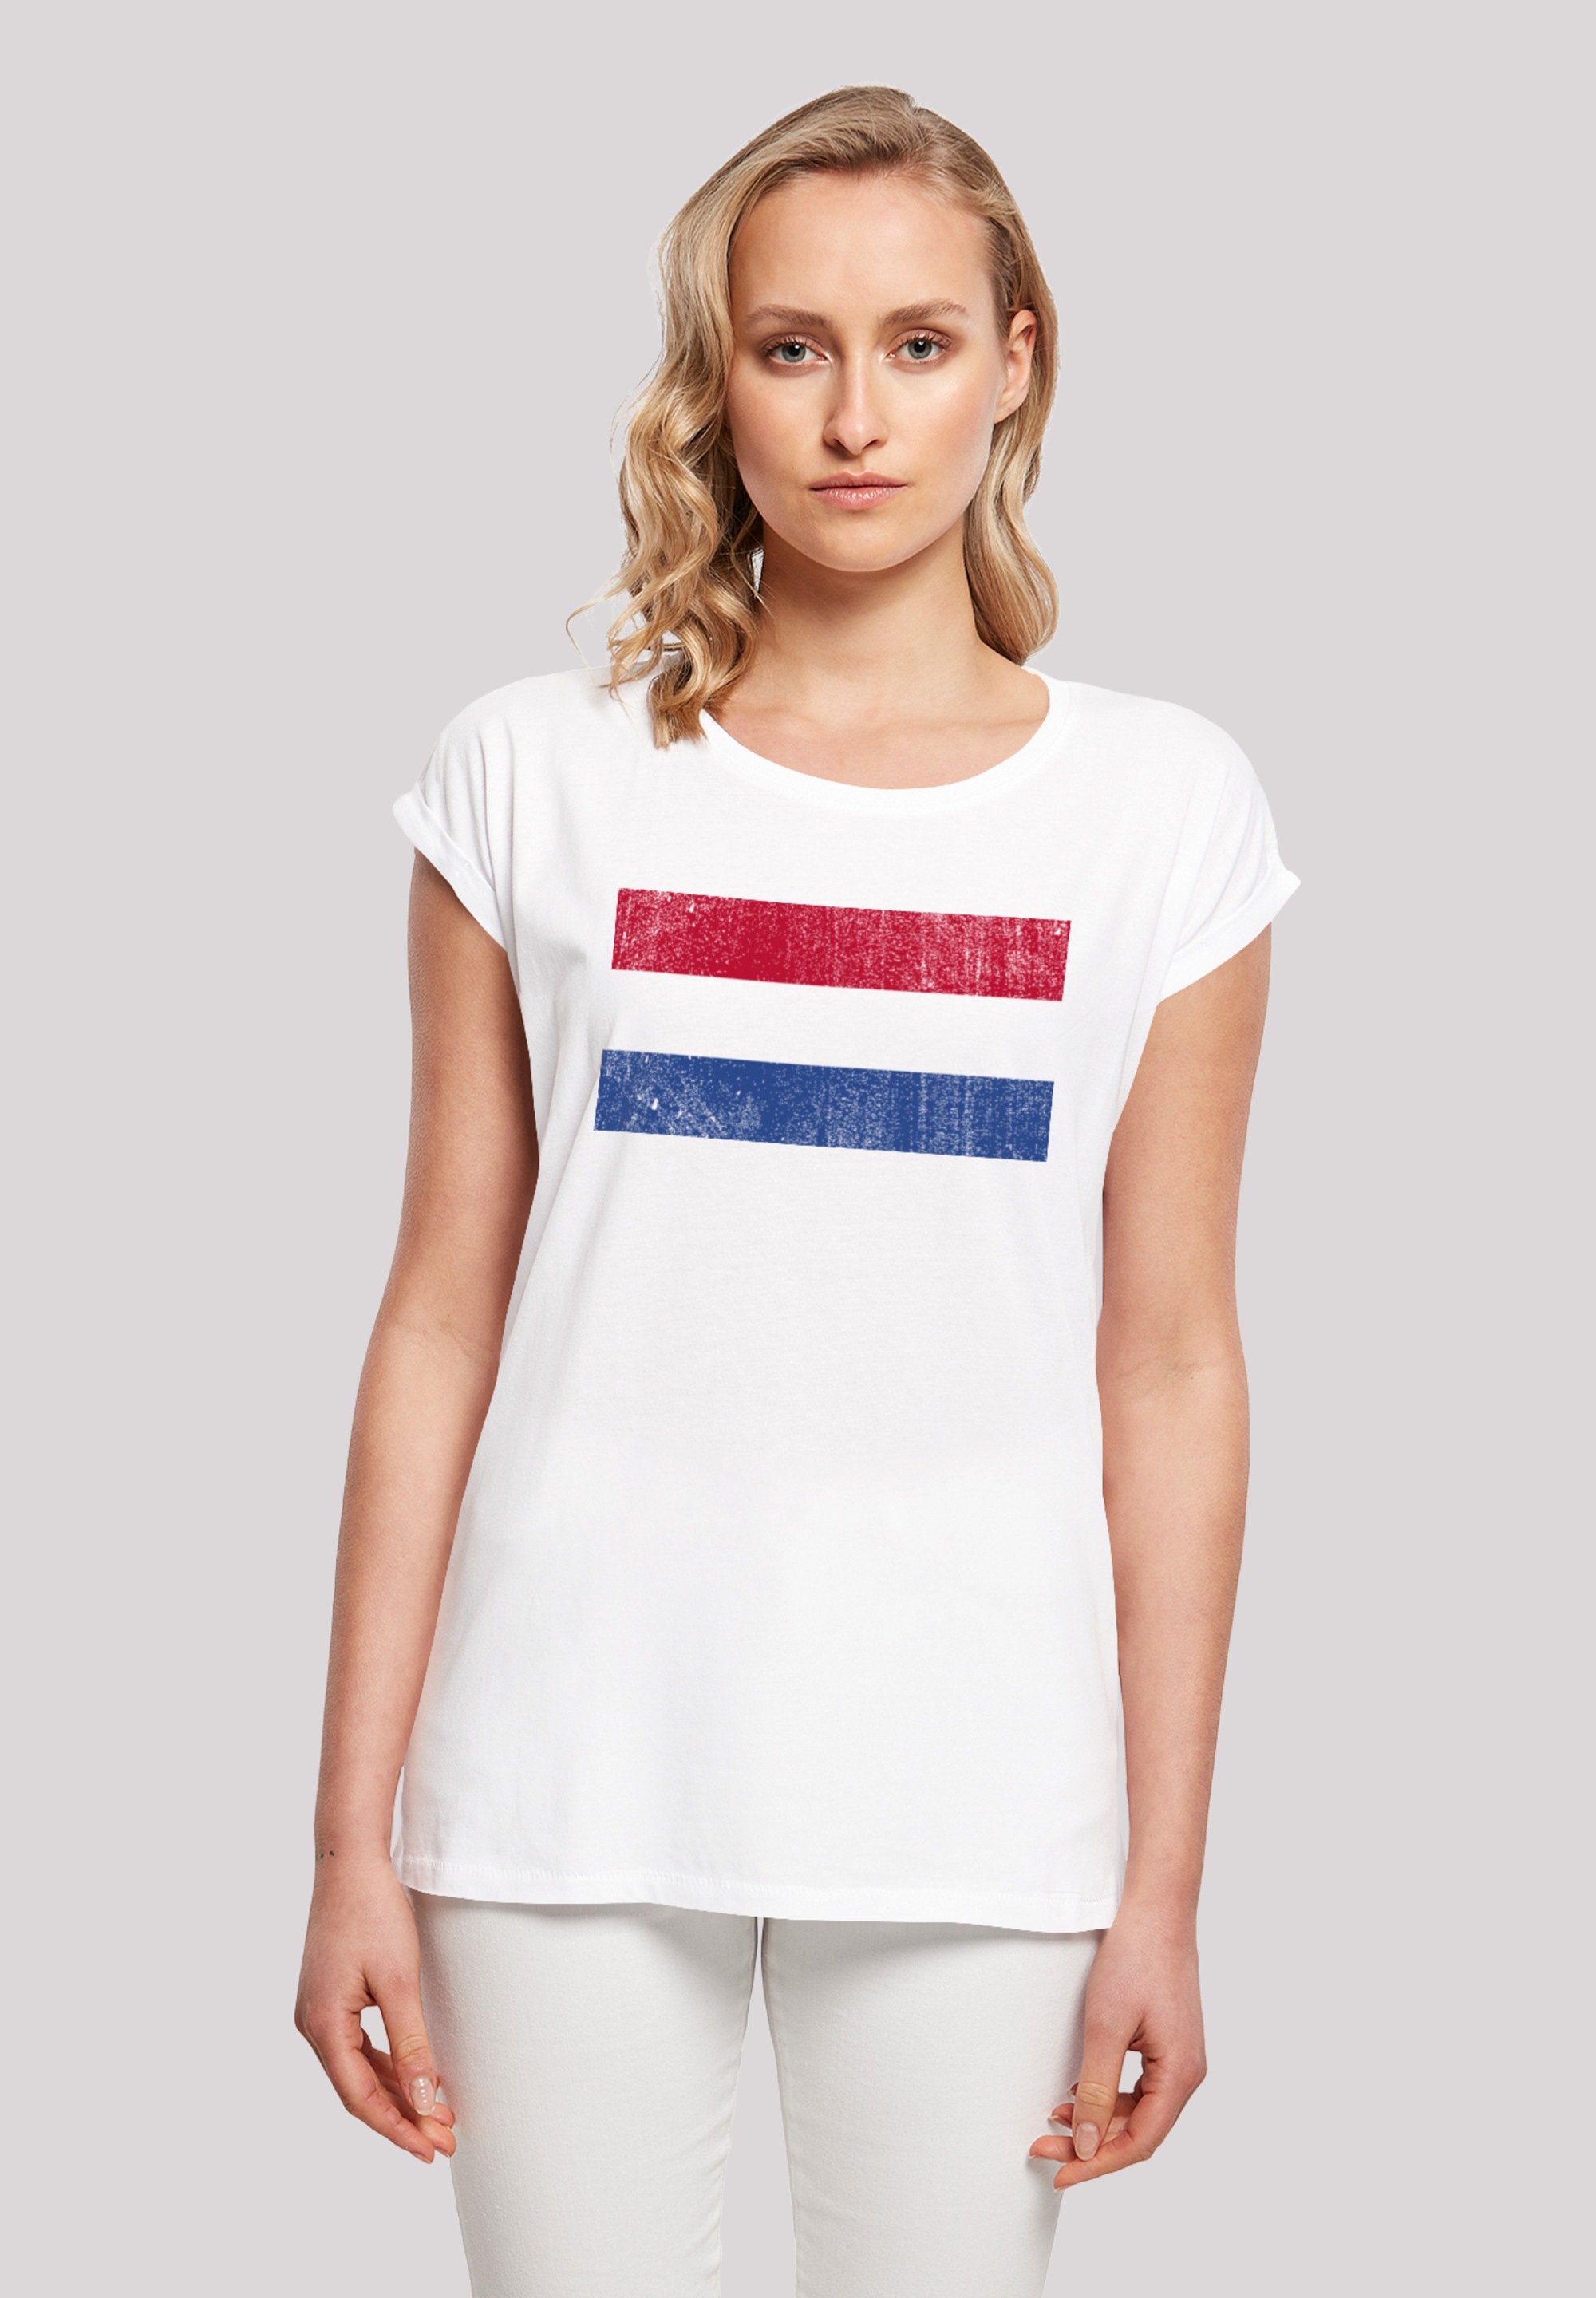 Keine Angabe bestellen F4NT4STIC Flagge Holland NIederlande distressed«, »Netherlands T-Shirt BAUR für |